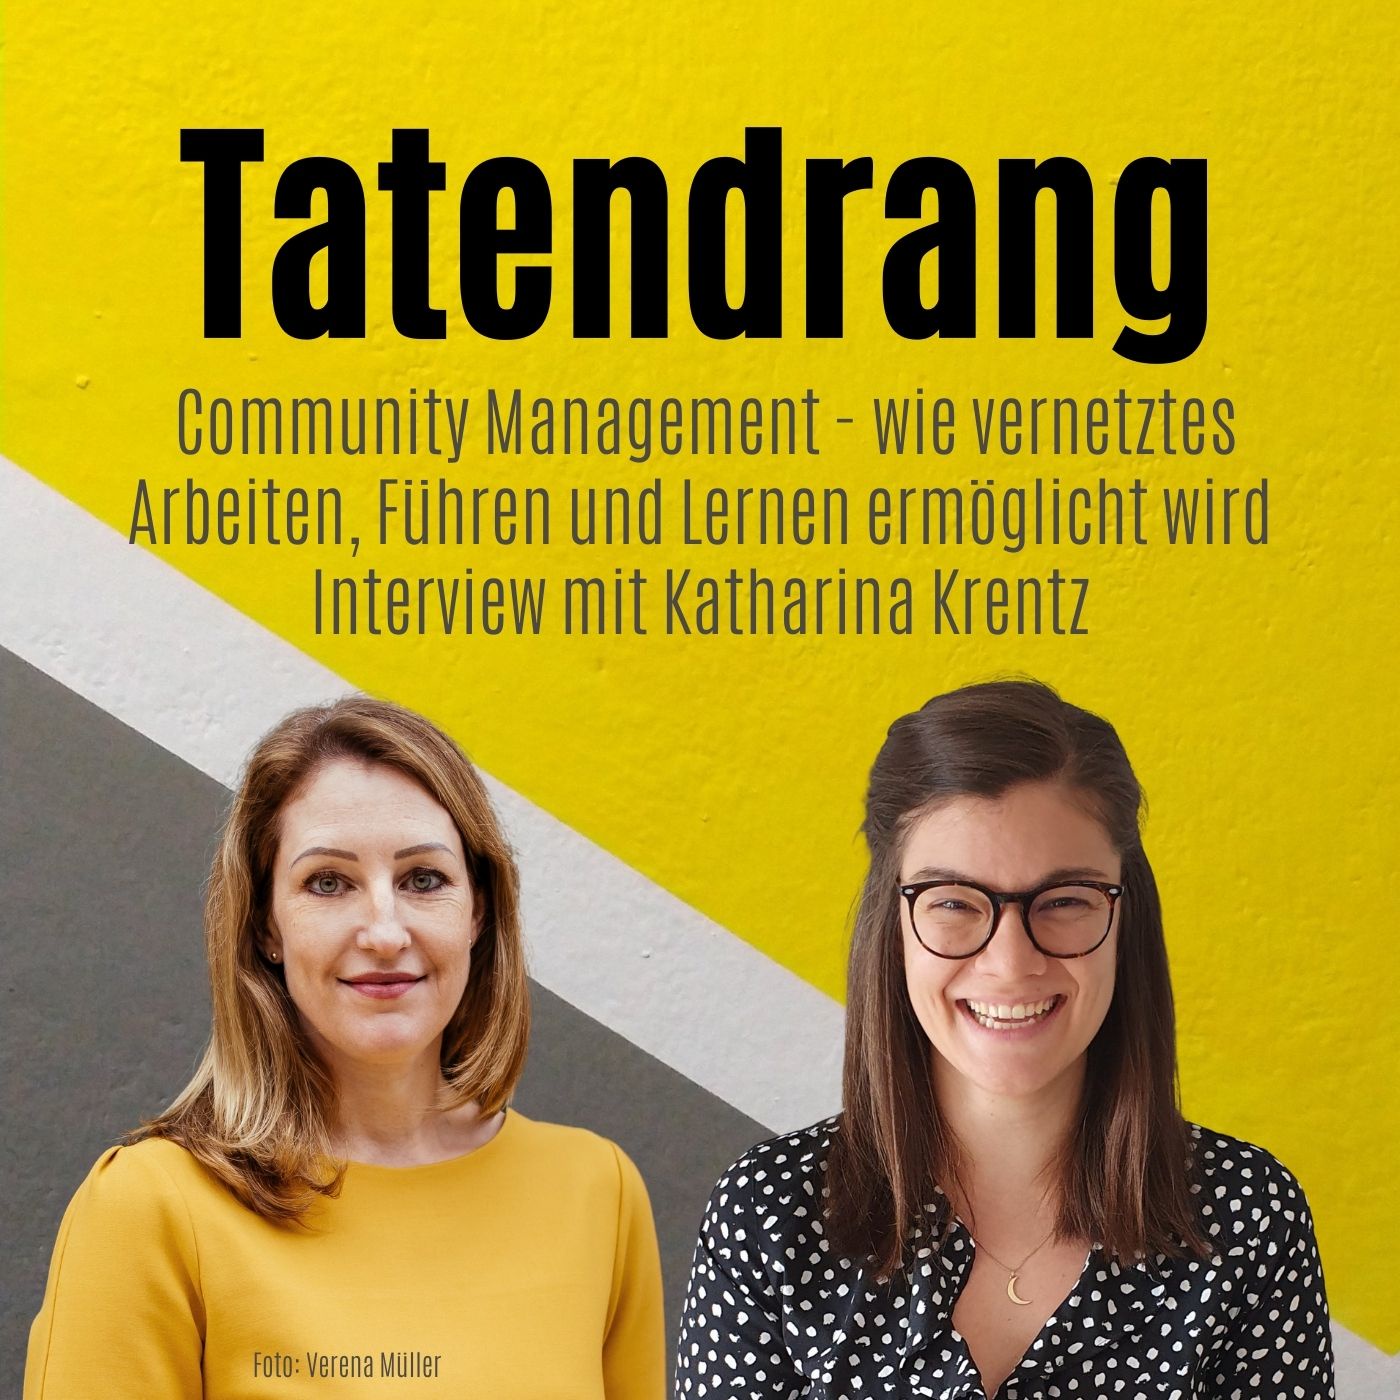 Community Management - wie vernetztes Arbeiten, Führen und Lernen ermöglicht wird | Interview mit Katharina Krentz